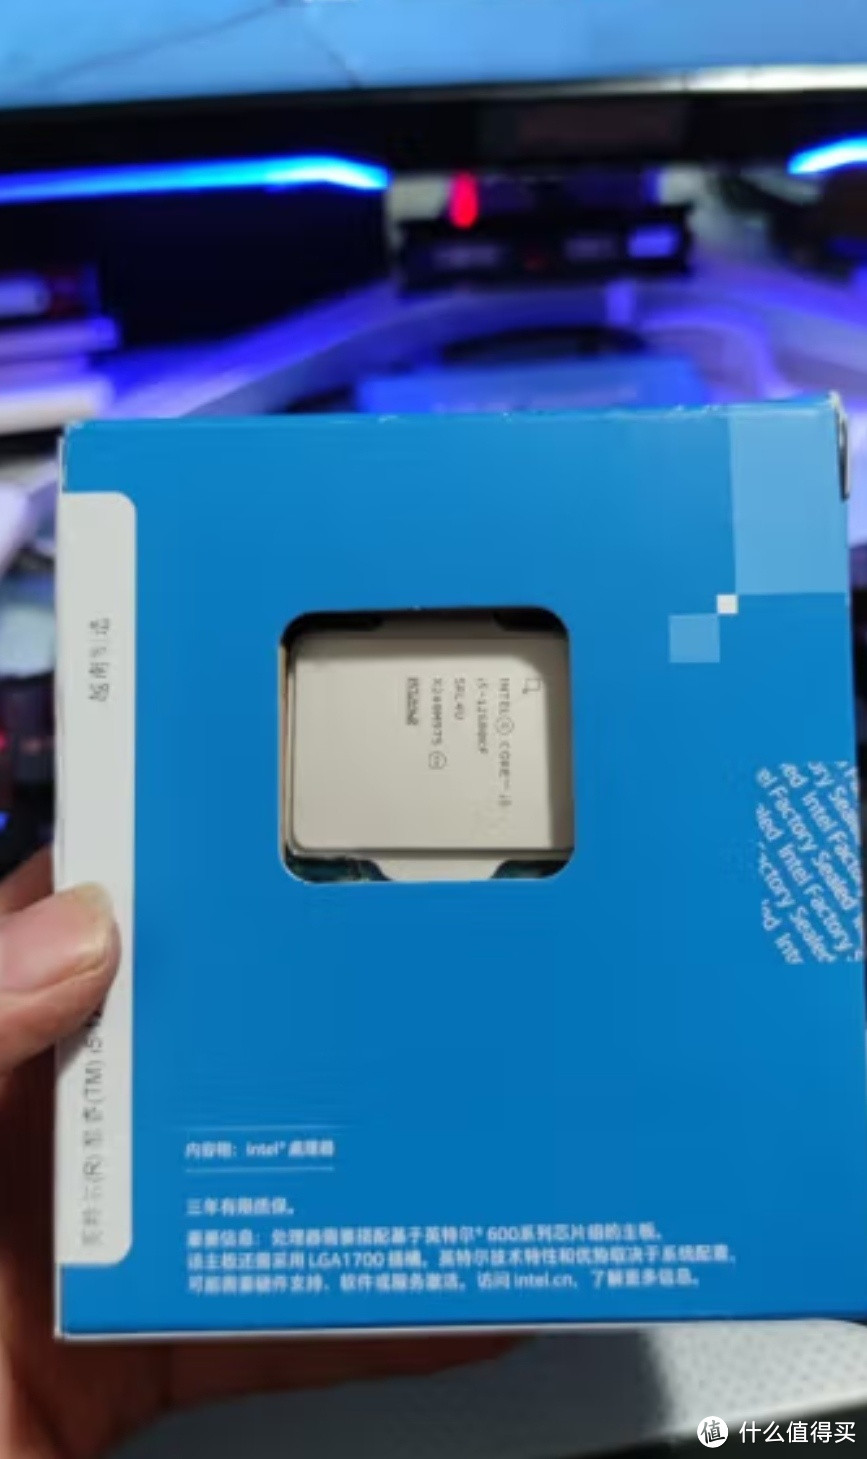 英特尔(Intel) i5-12600KF 酷睿12代处理器，游戏办公两不误